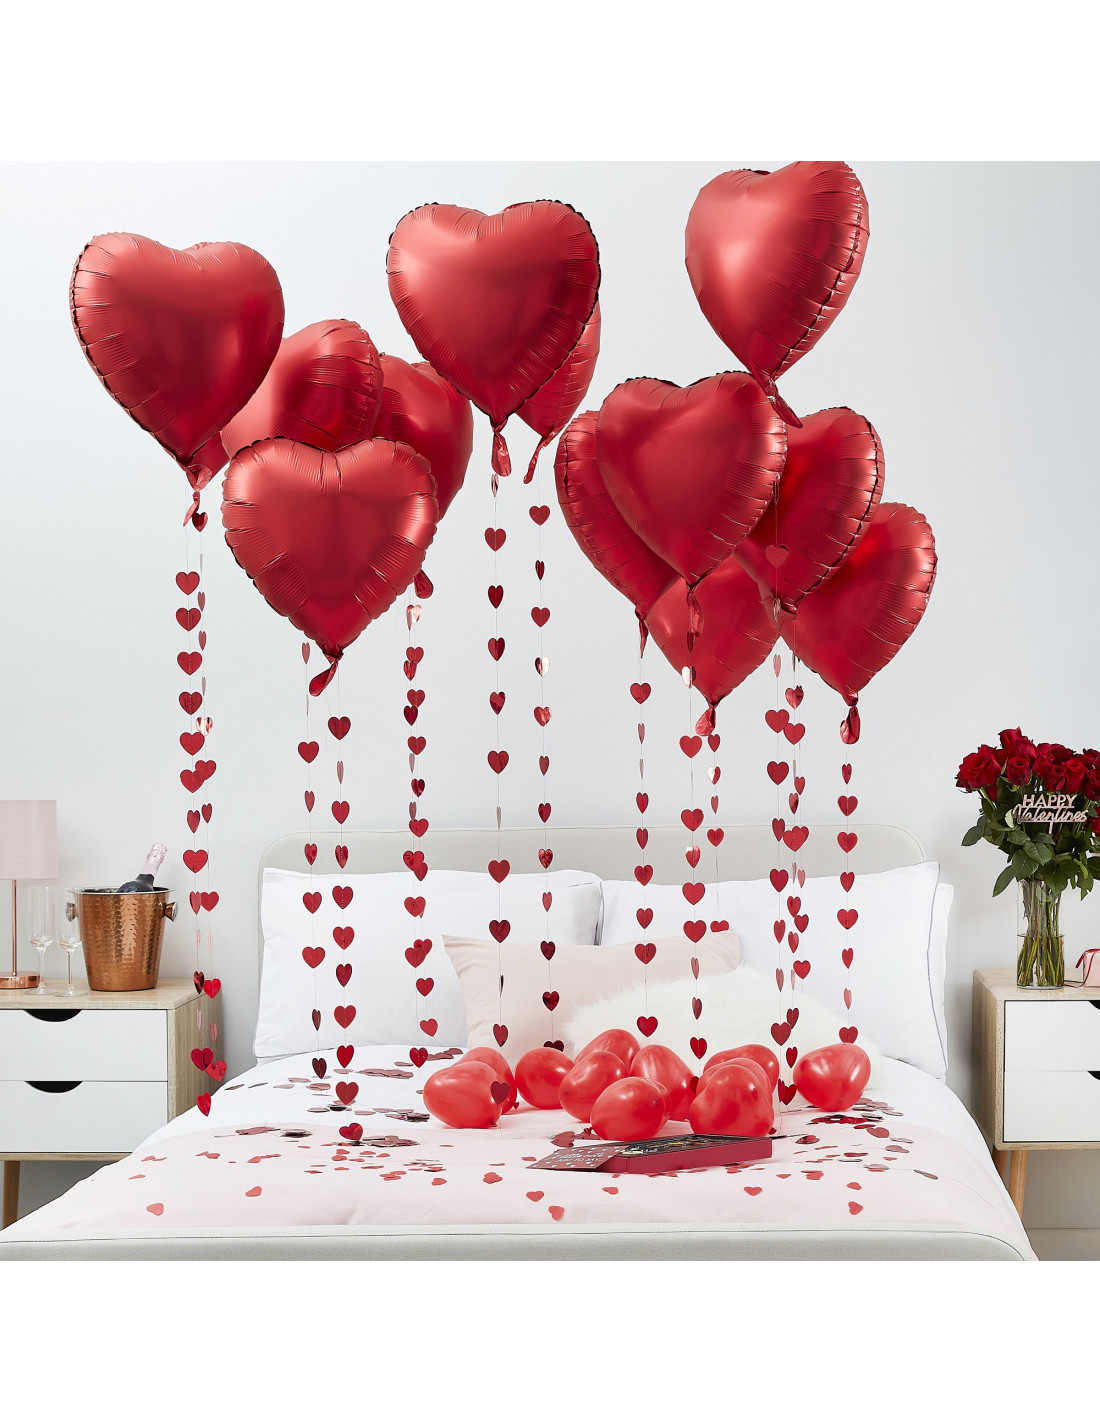 Ballons à L'hélium Dans Des Couleurs Pastel Douces Mariage Et Anniversaire  De La Saint-valentin Rendu 3d Du Ballon